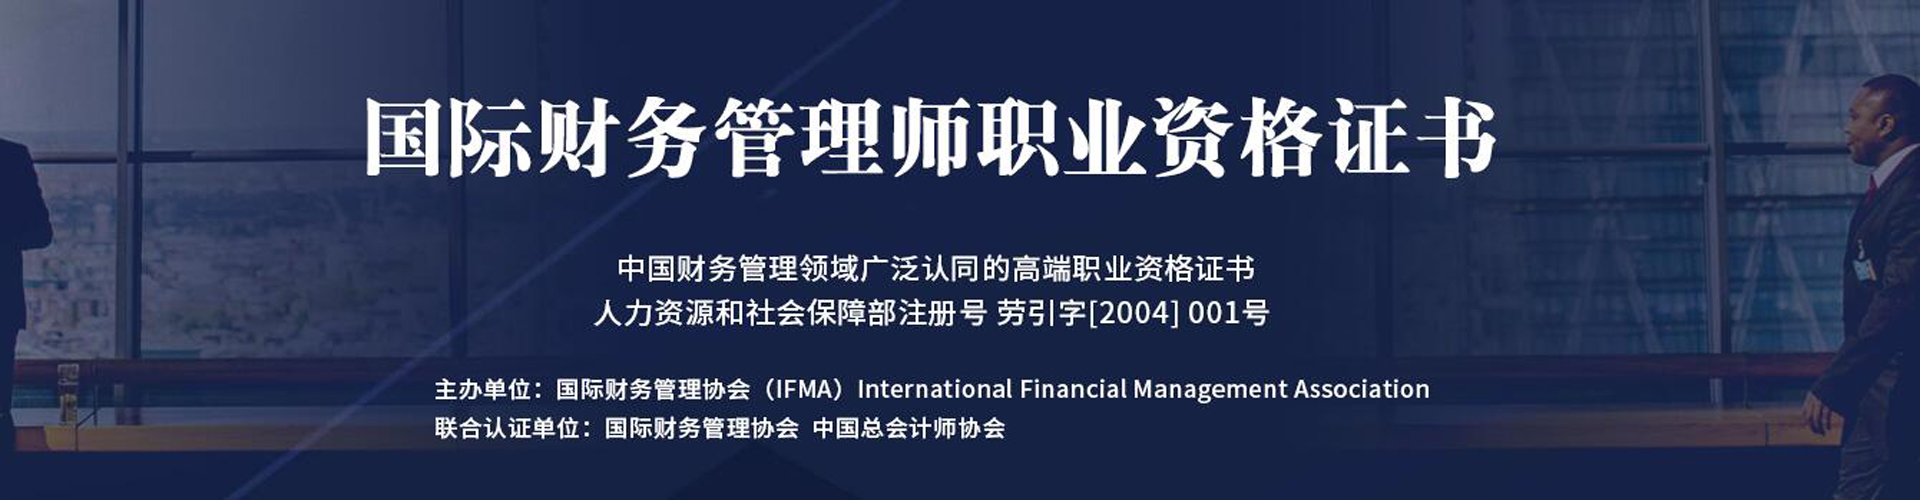 IFM国际财务管理师